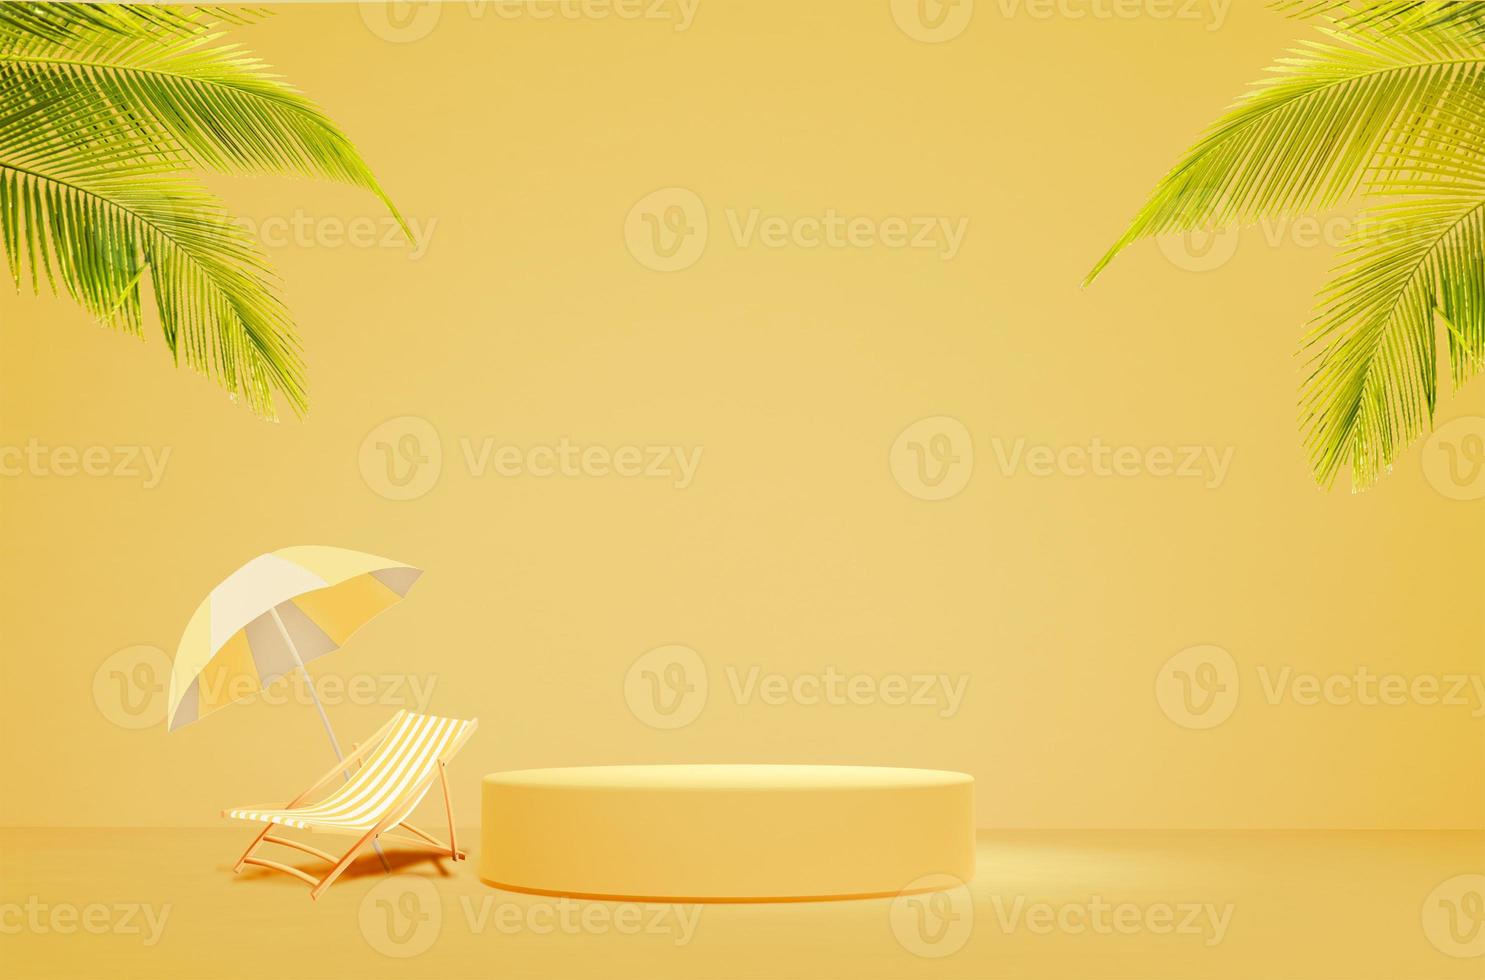 podio de exhibición de productos publicitarios de escenario redondo único de verano con silla de playa y sombrilla y luz solar con imagen de renderizado 3d de hoja de coco foto